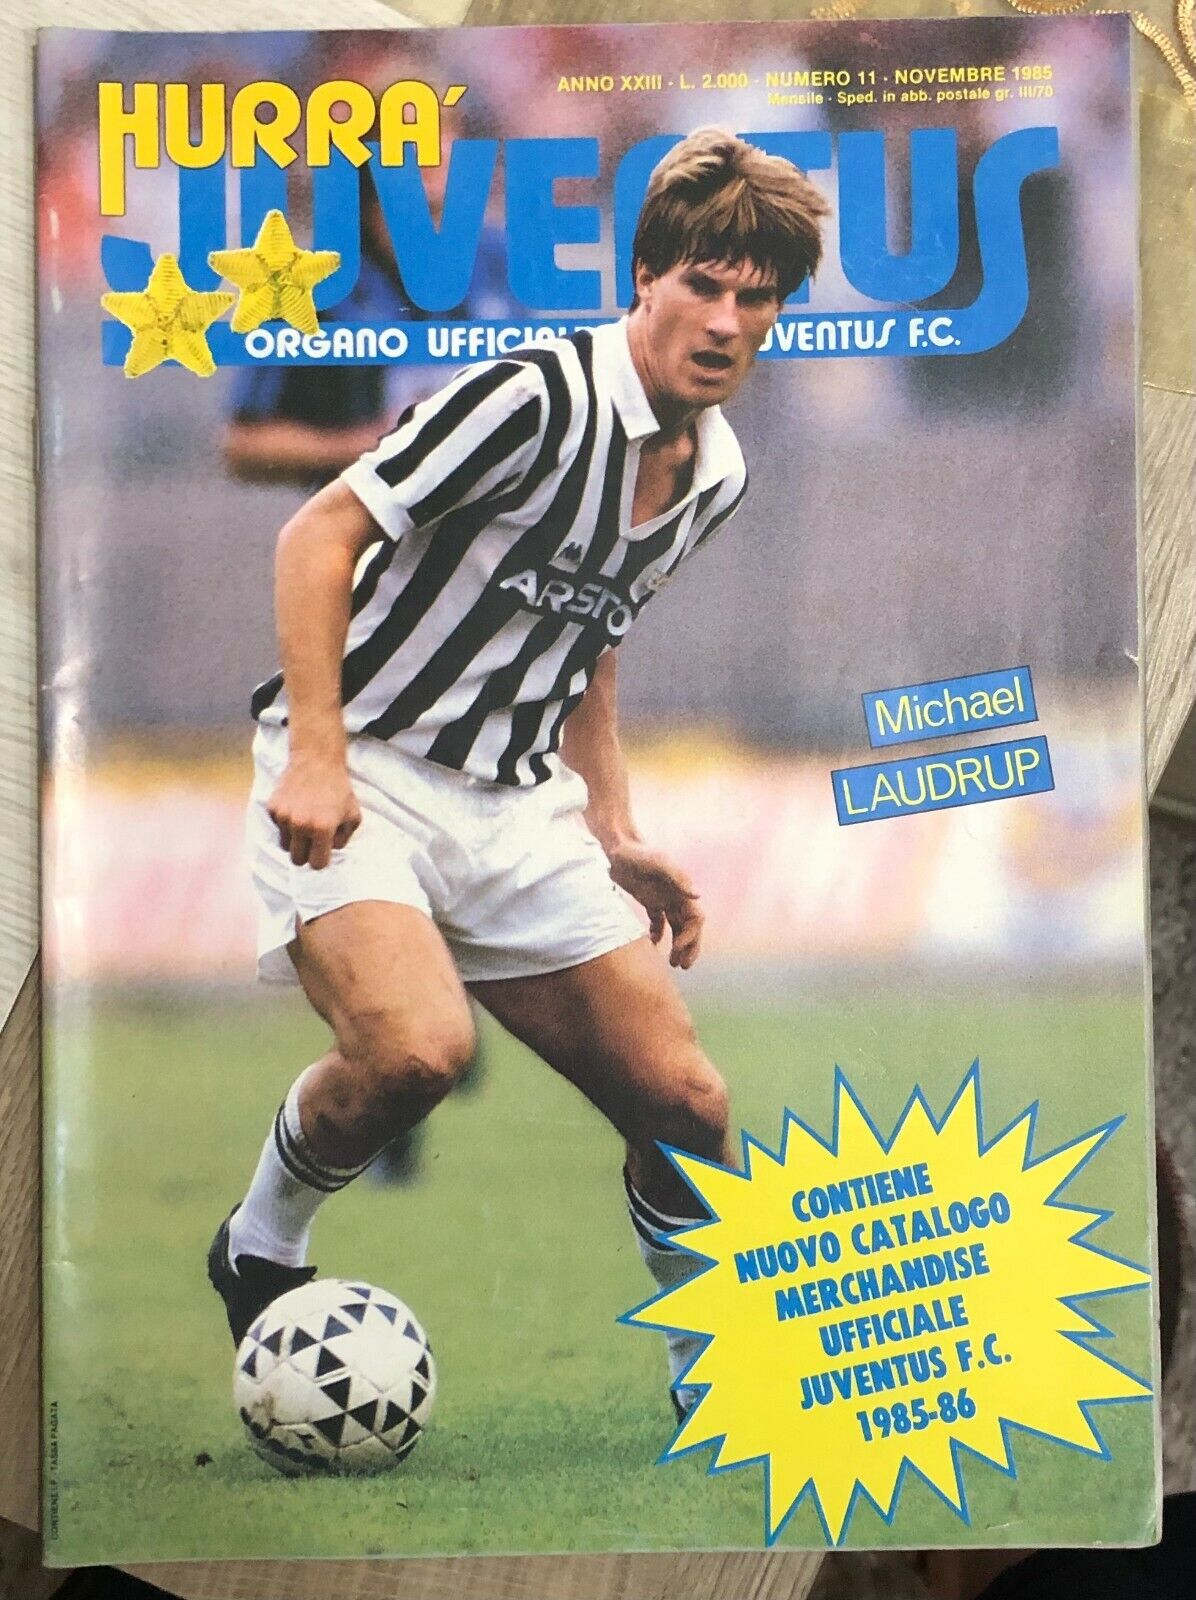 Hurr? Juventus n. 11/1985 di Aa.vv.,  1985,  Juventus F.c.